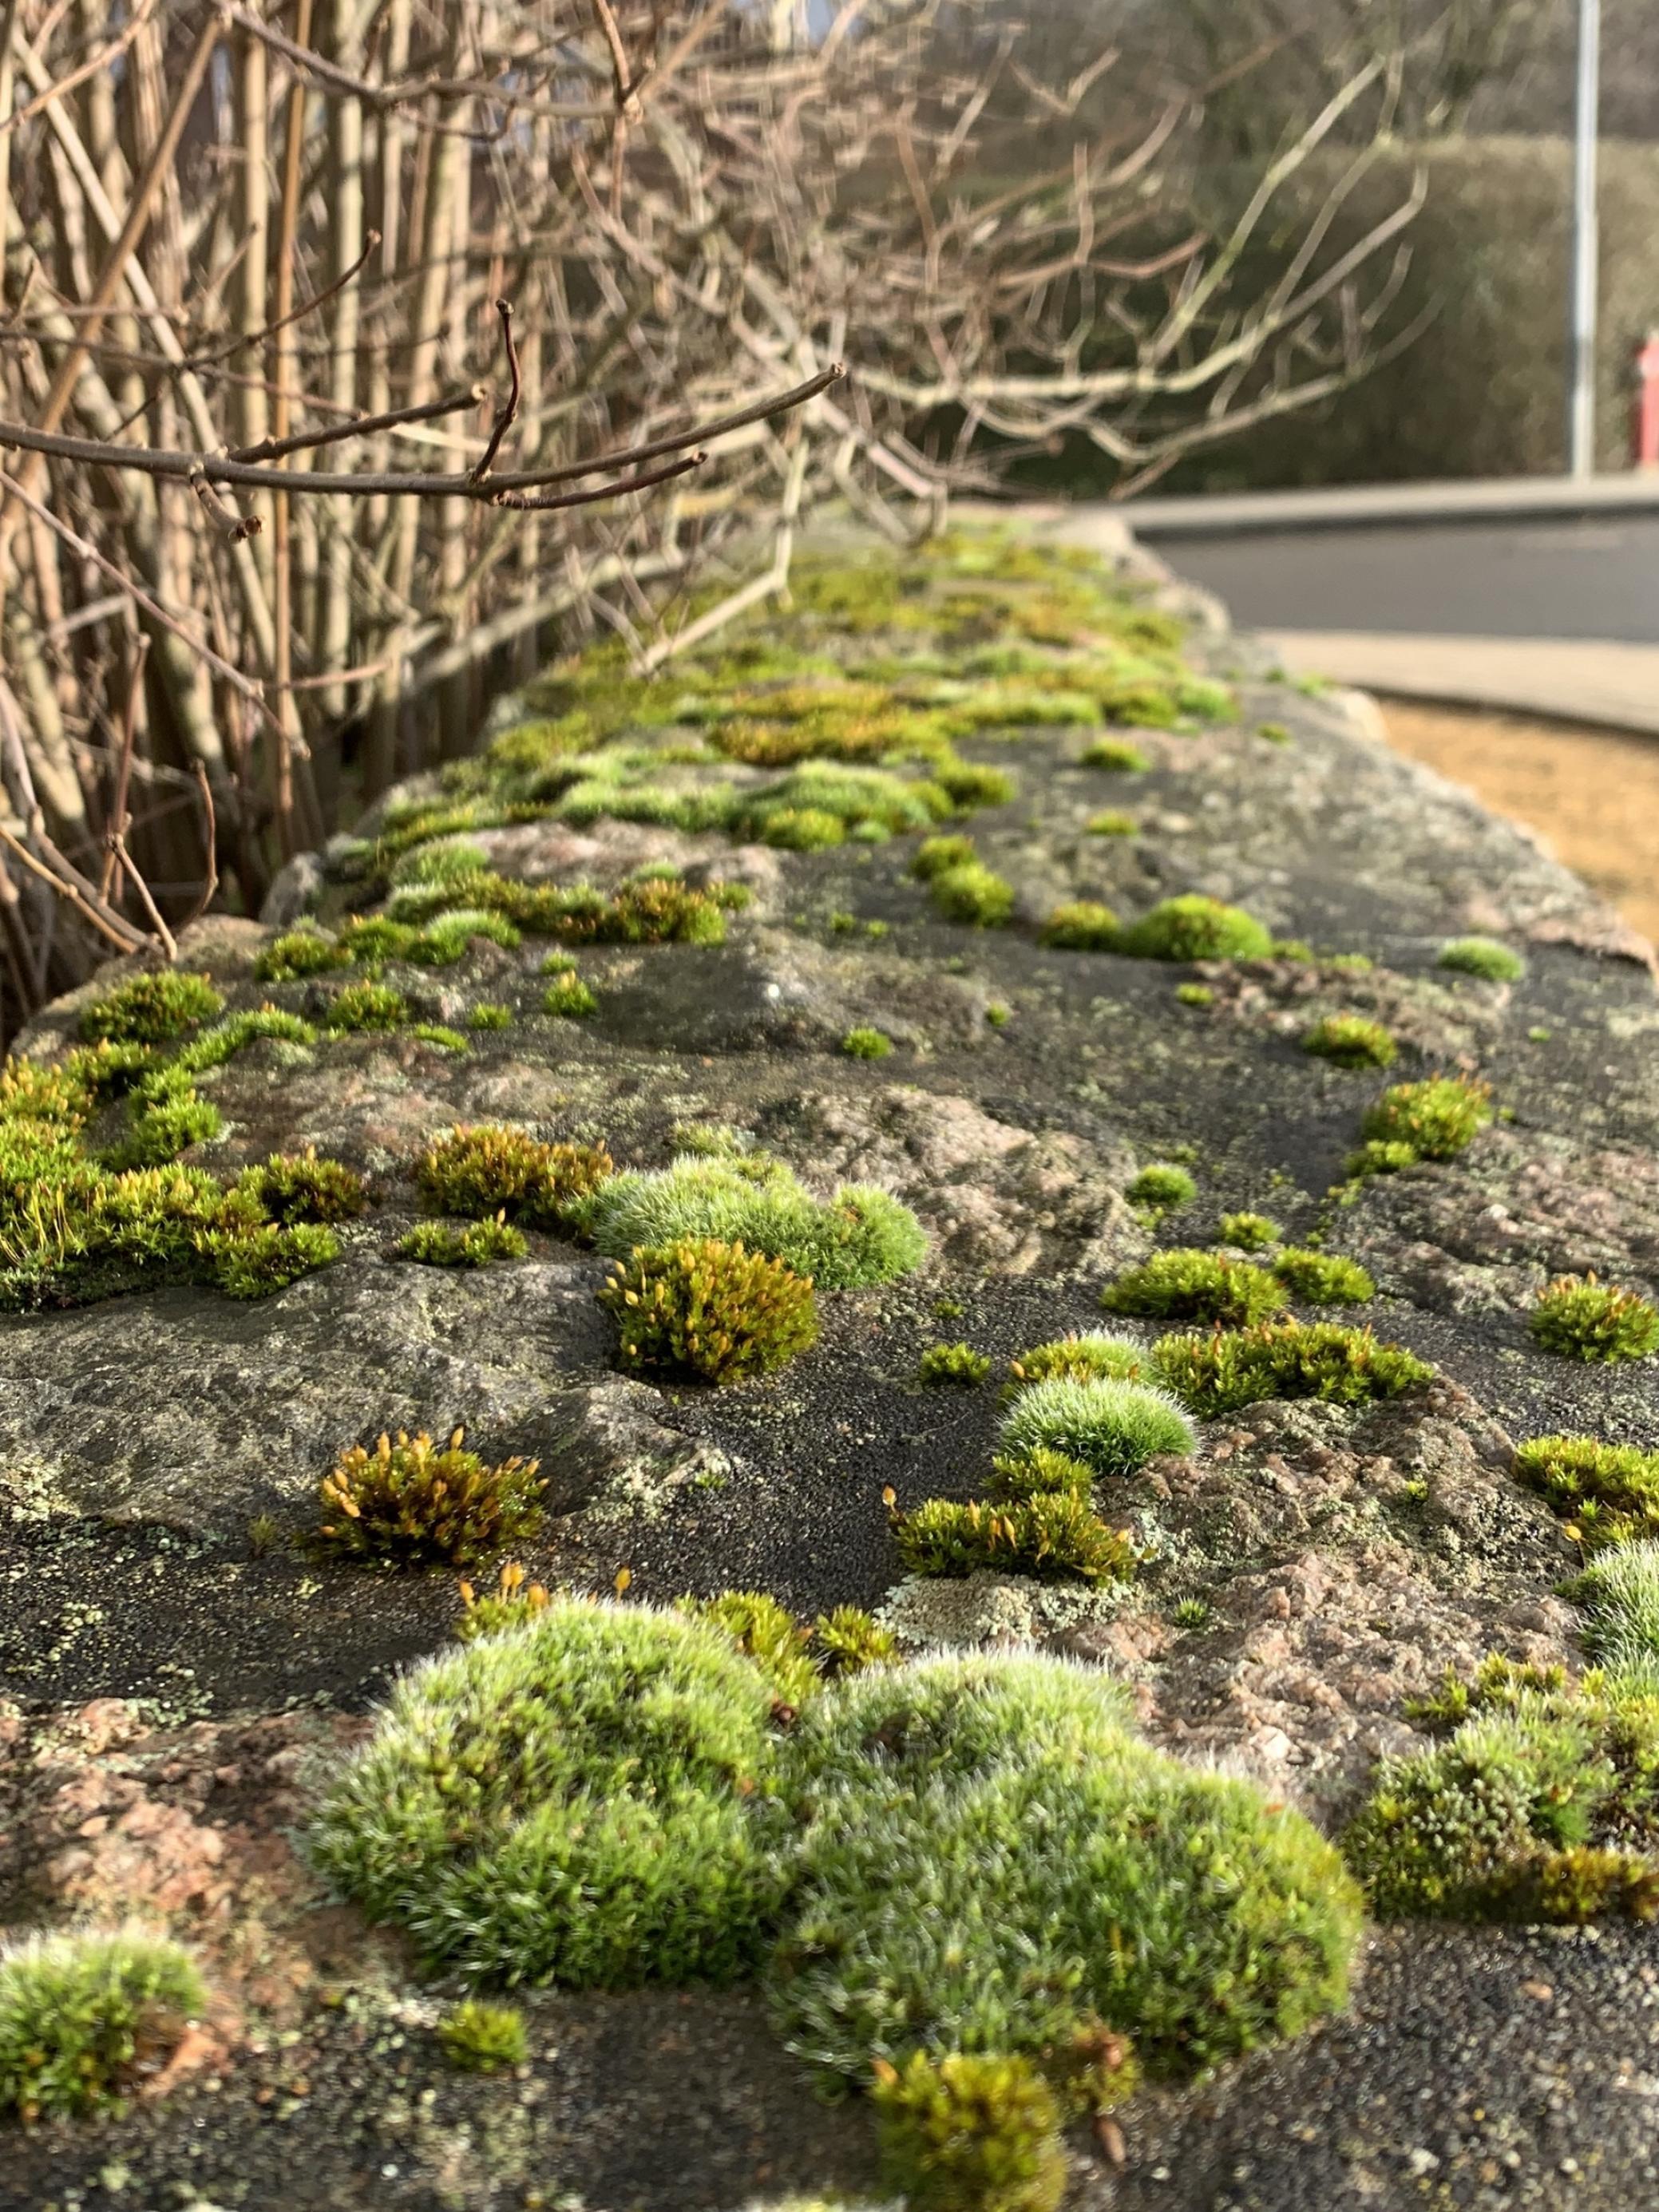 Krone einer Gartenmauer, mit verschiedenfarbigen Moospolstern bedeckt.